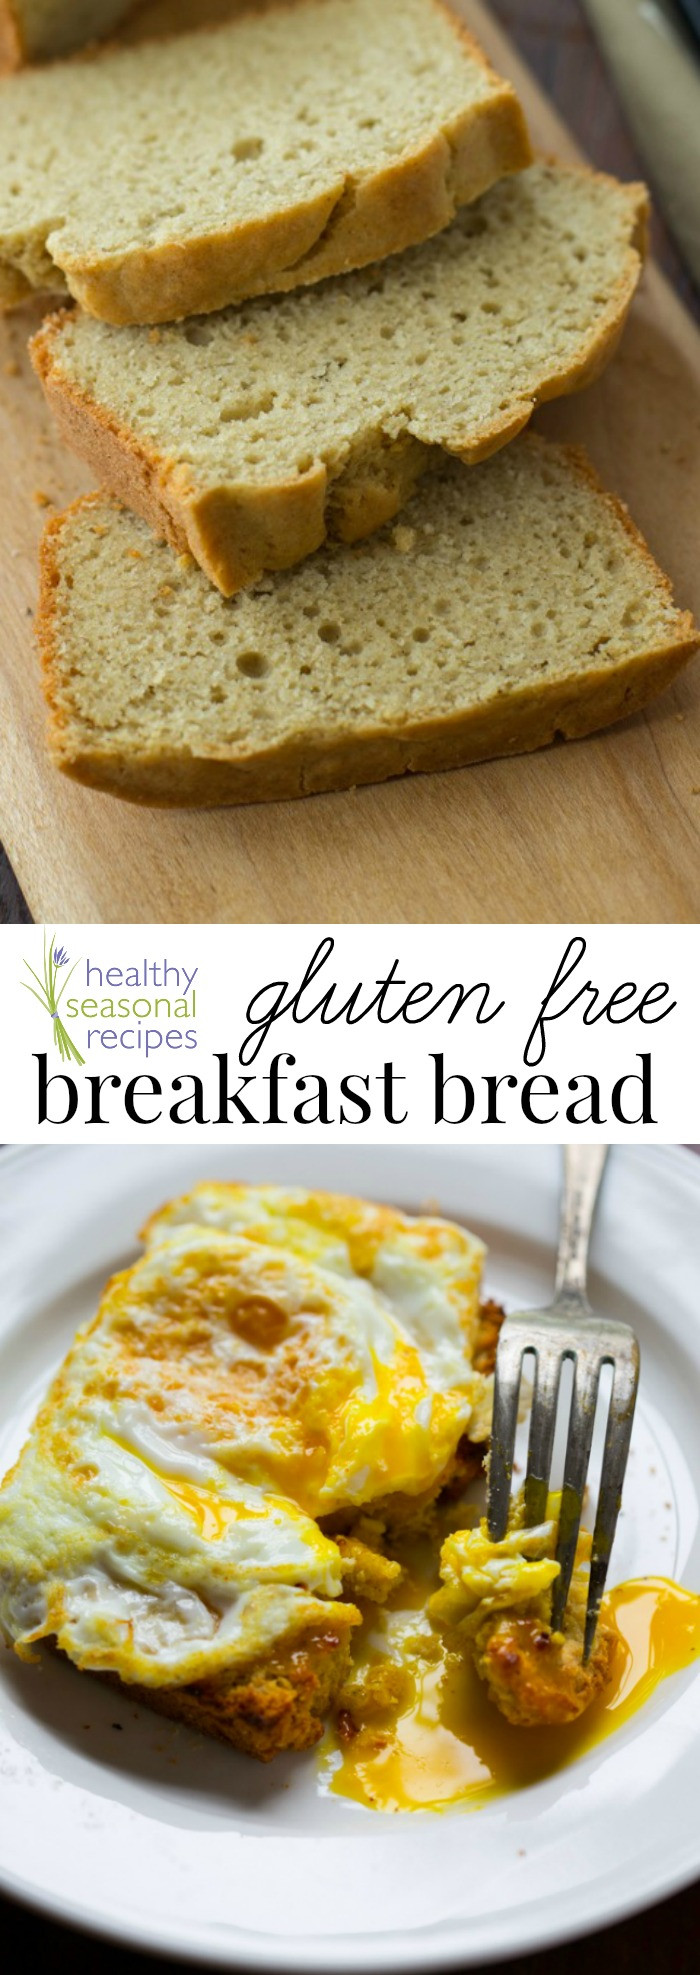 Healthy Dairy Free Breakfast
 gluten free breakfast bread Healthy Seasonal Recipes